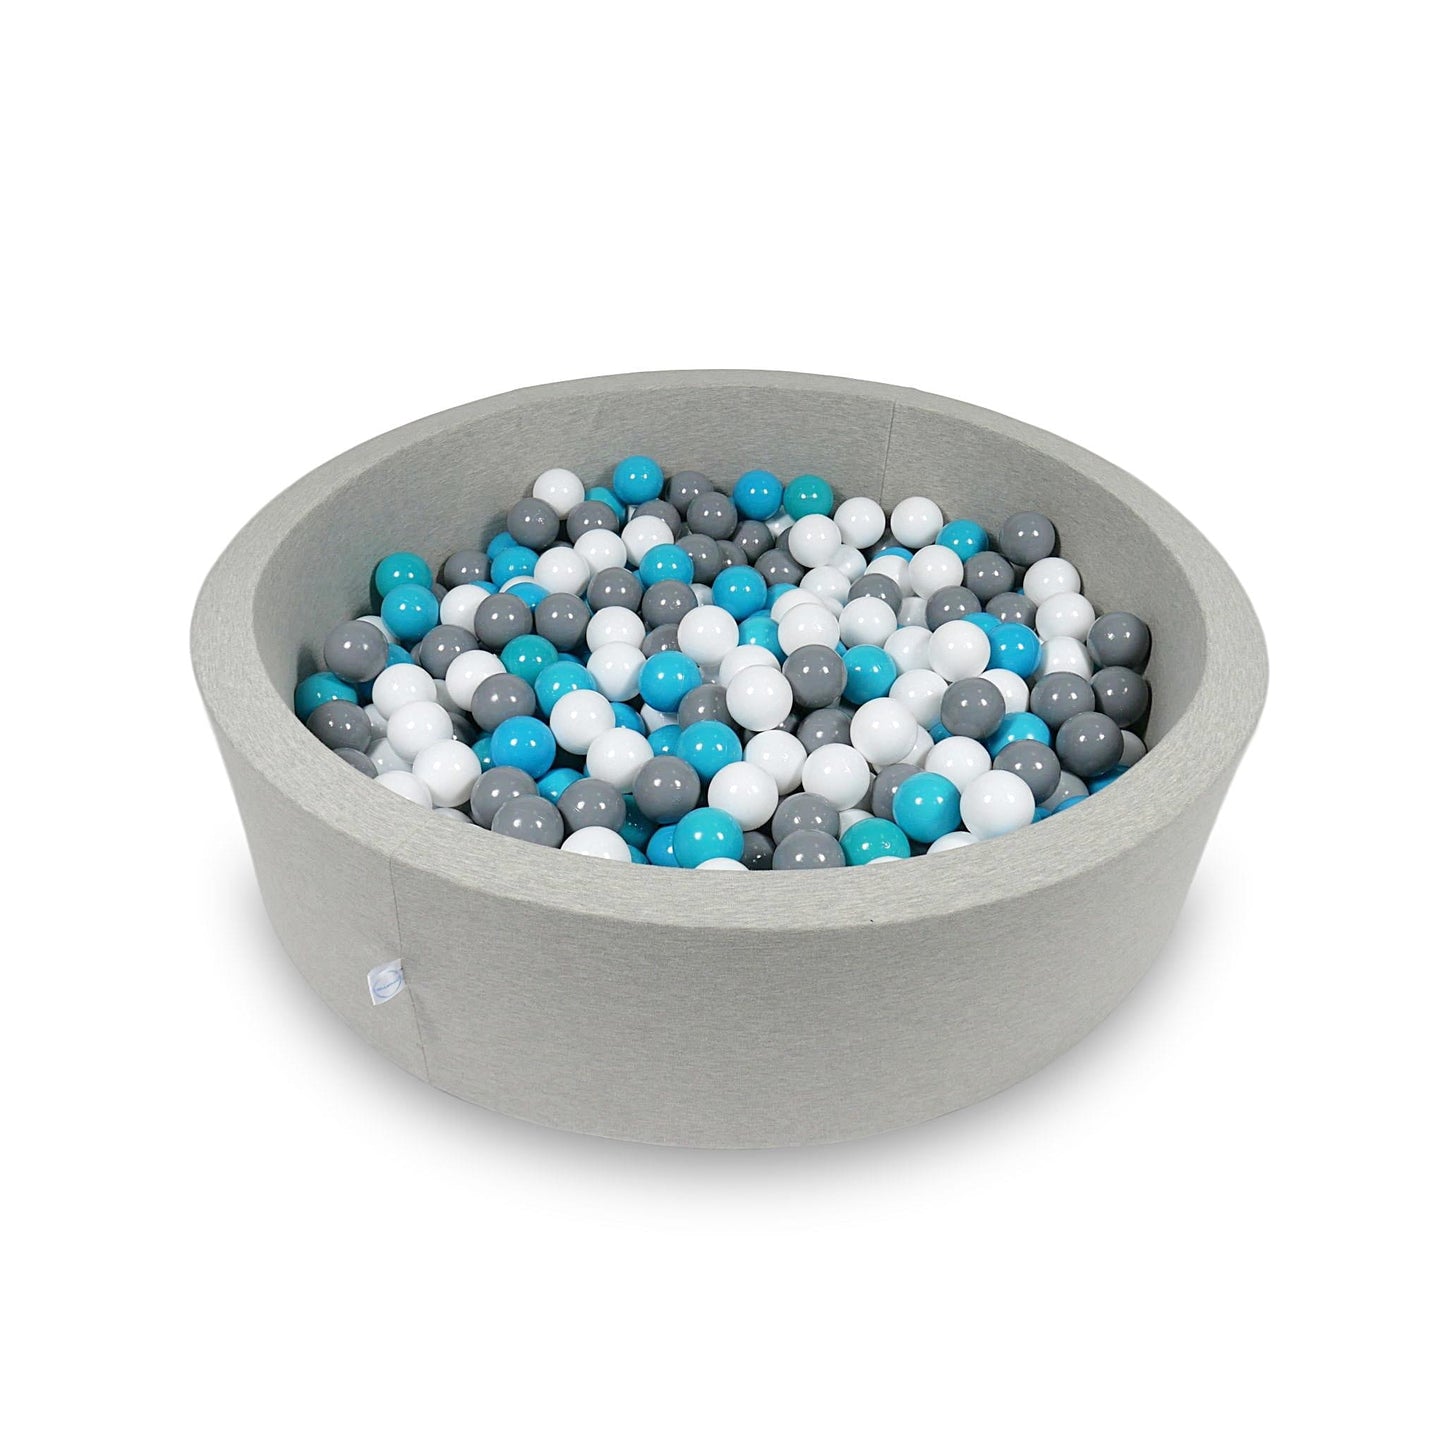 Piscine à Balles 110x30cm gris clair avec balles 400pcs (bleu, blanc, gris)